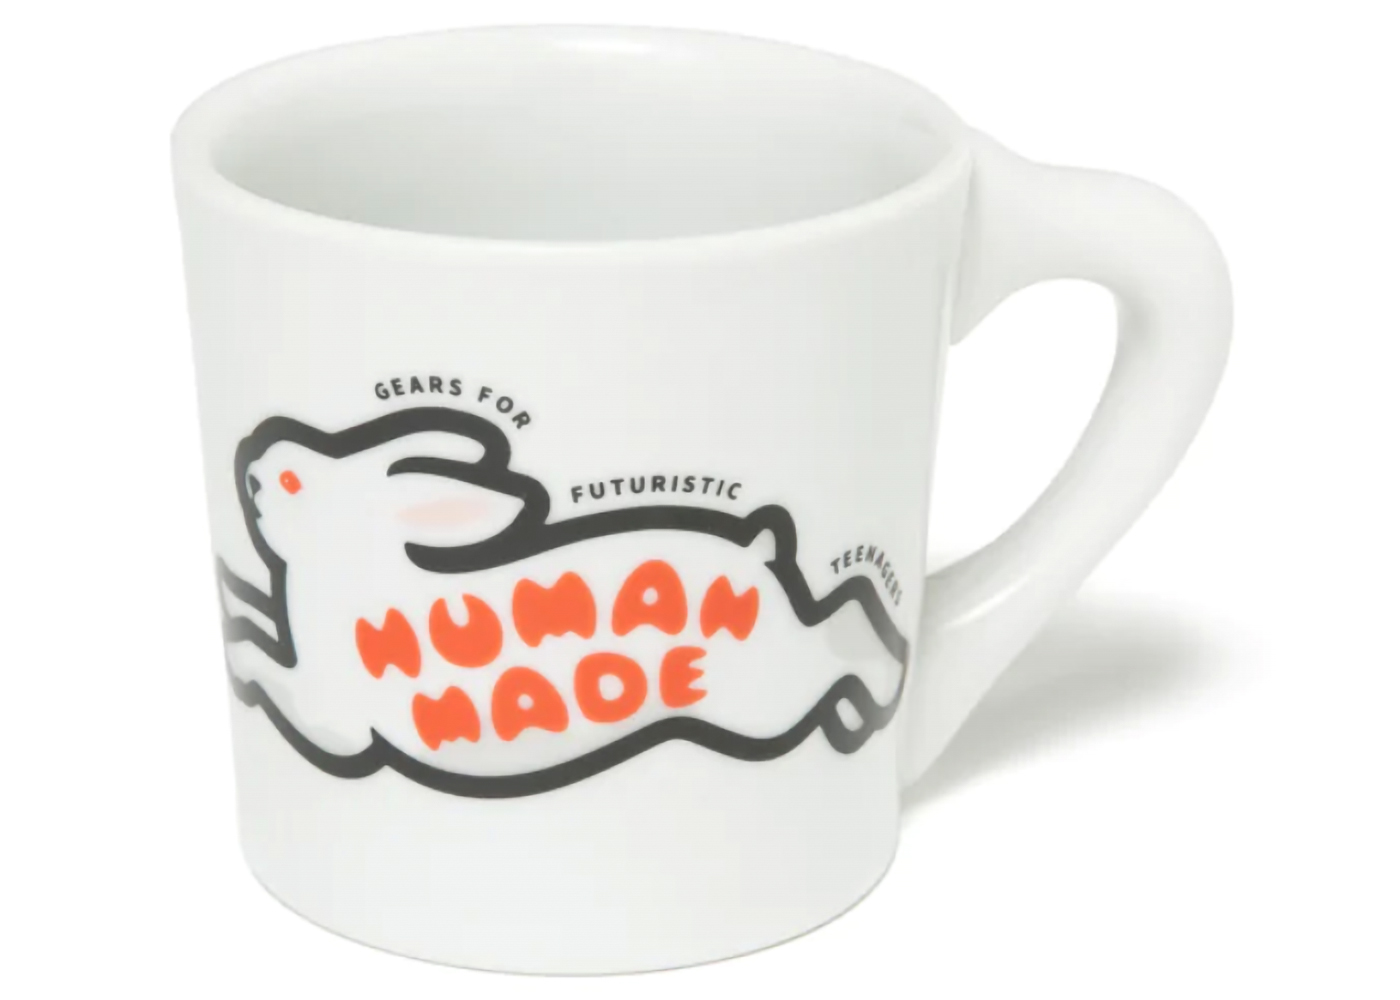 HUMAN MADE MUG CUP